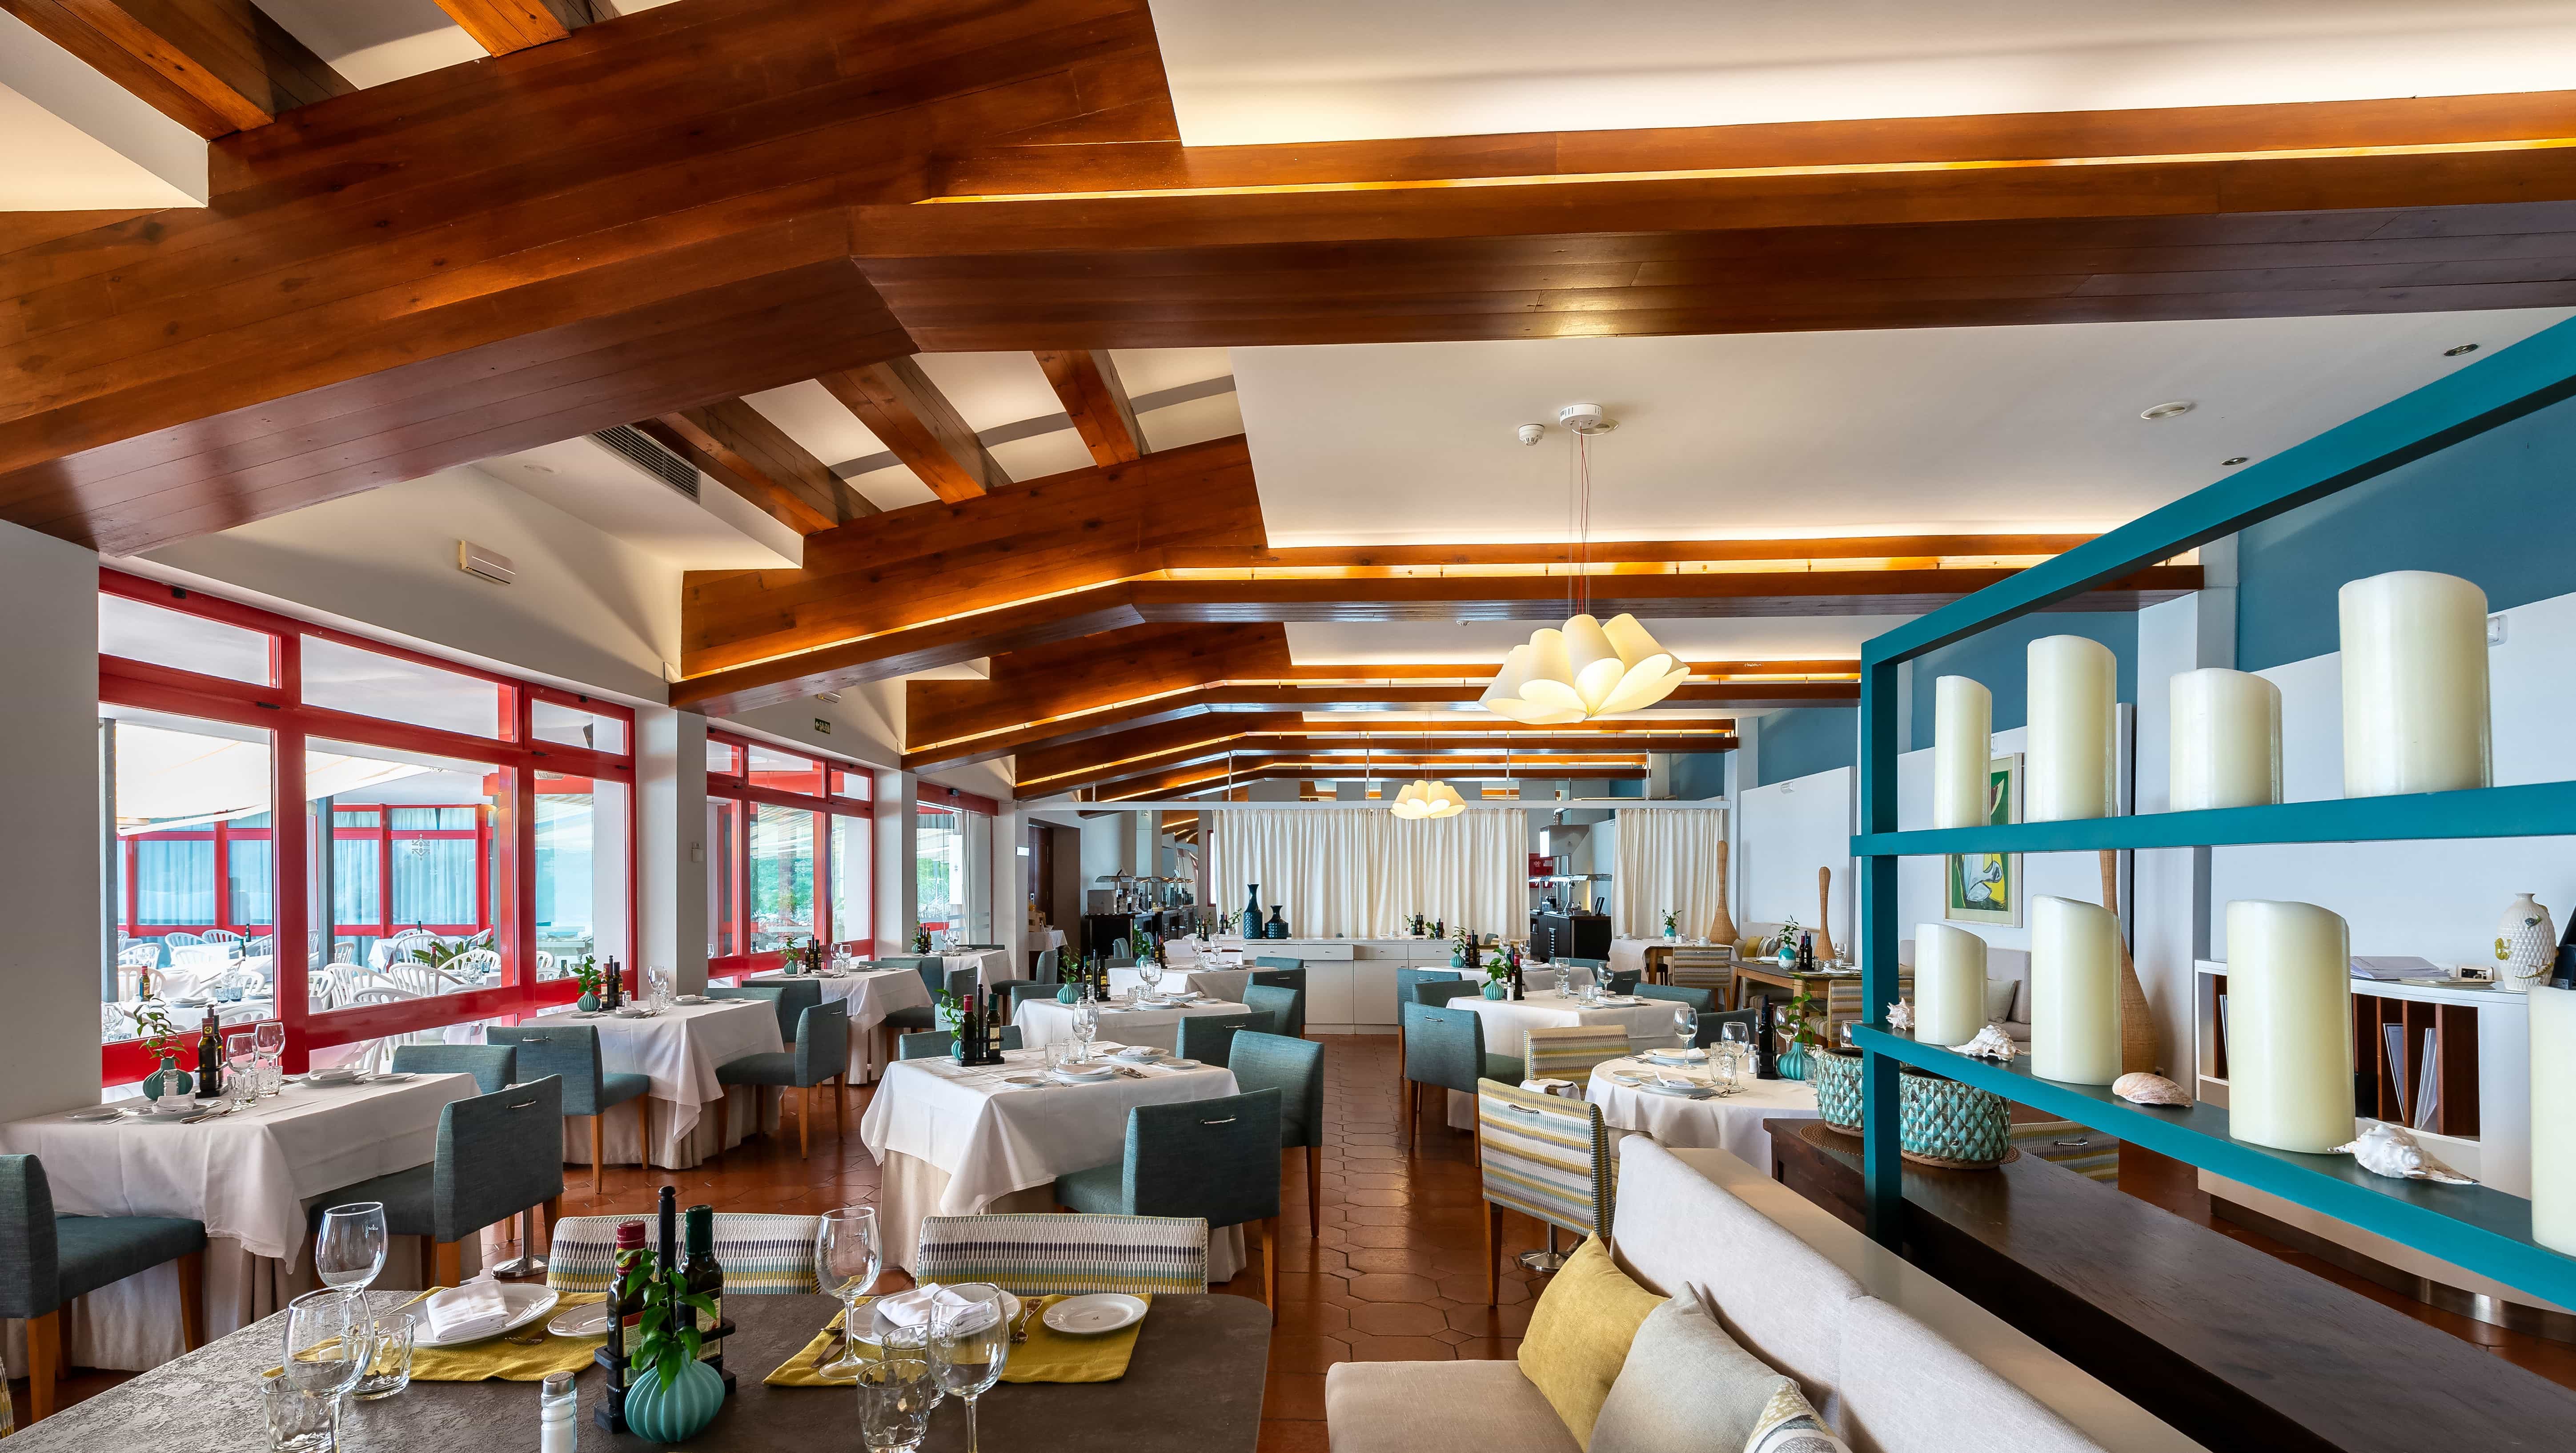 Vista del moderno comedor del Restaurante El Ombú del Mediterráneo del Parador de Nerja